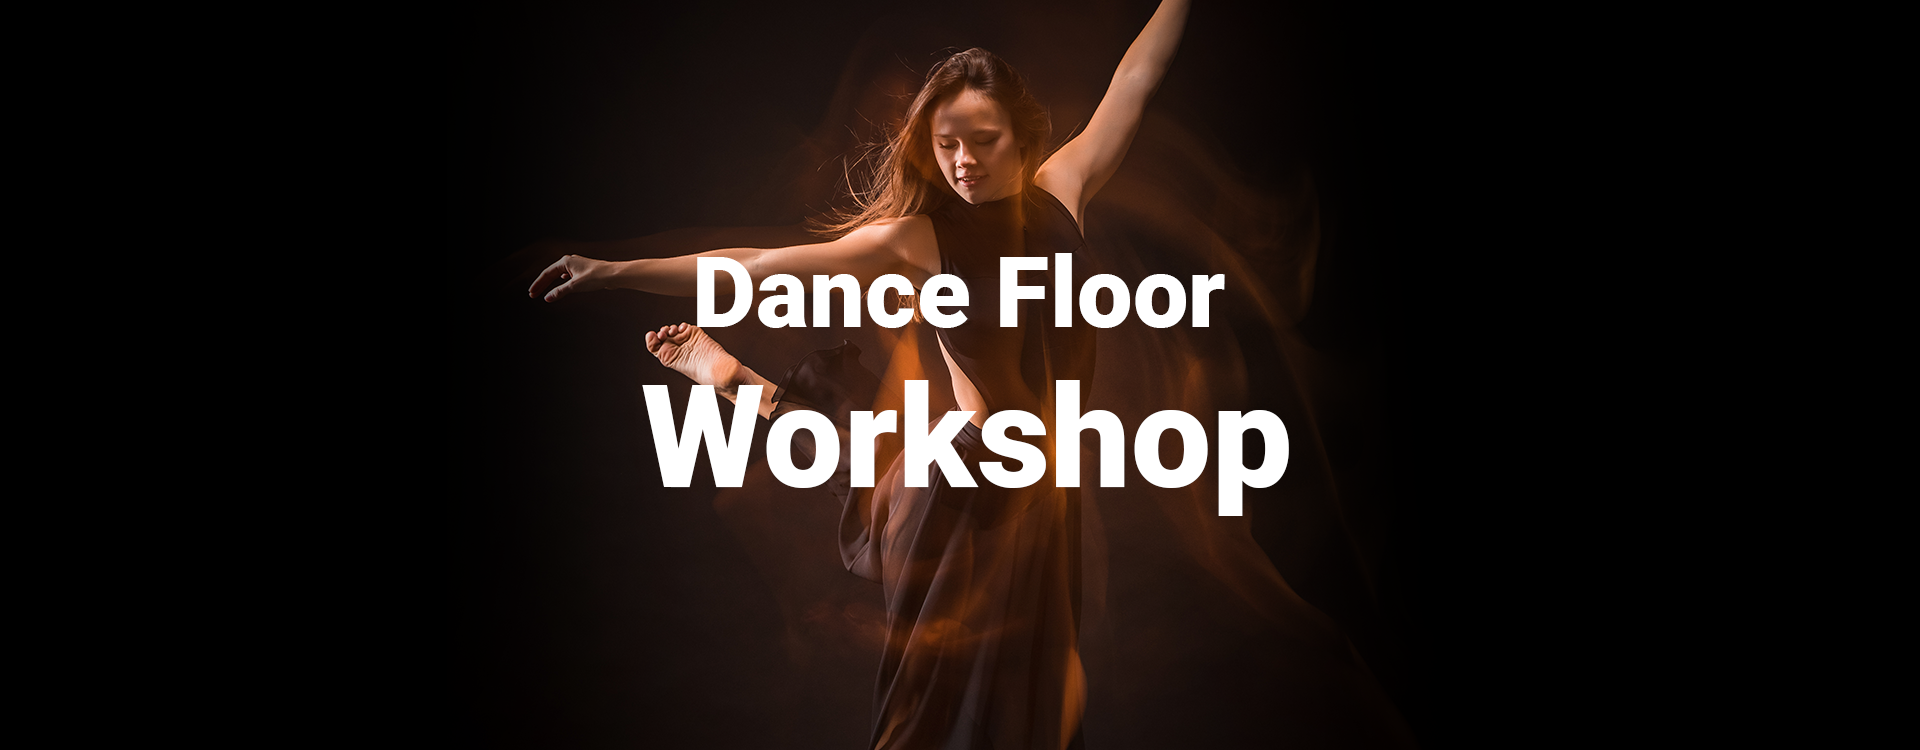 Dance Floor Workshop